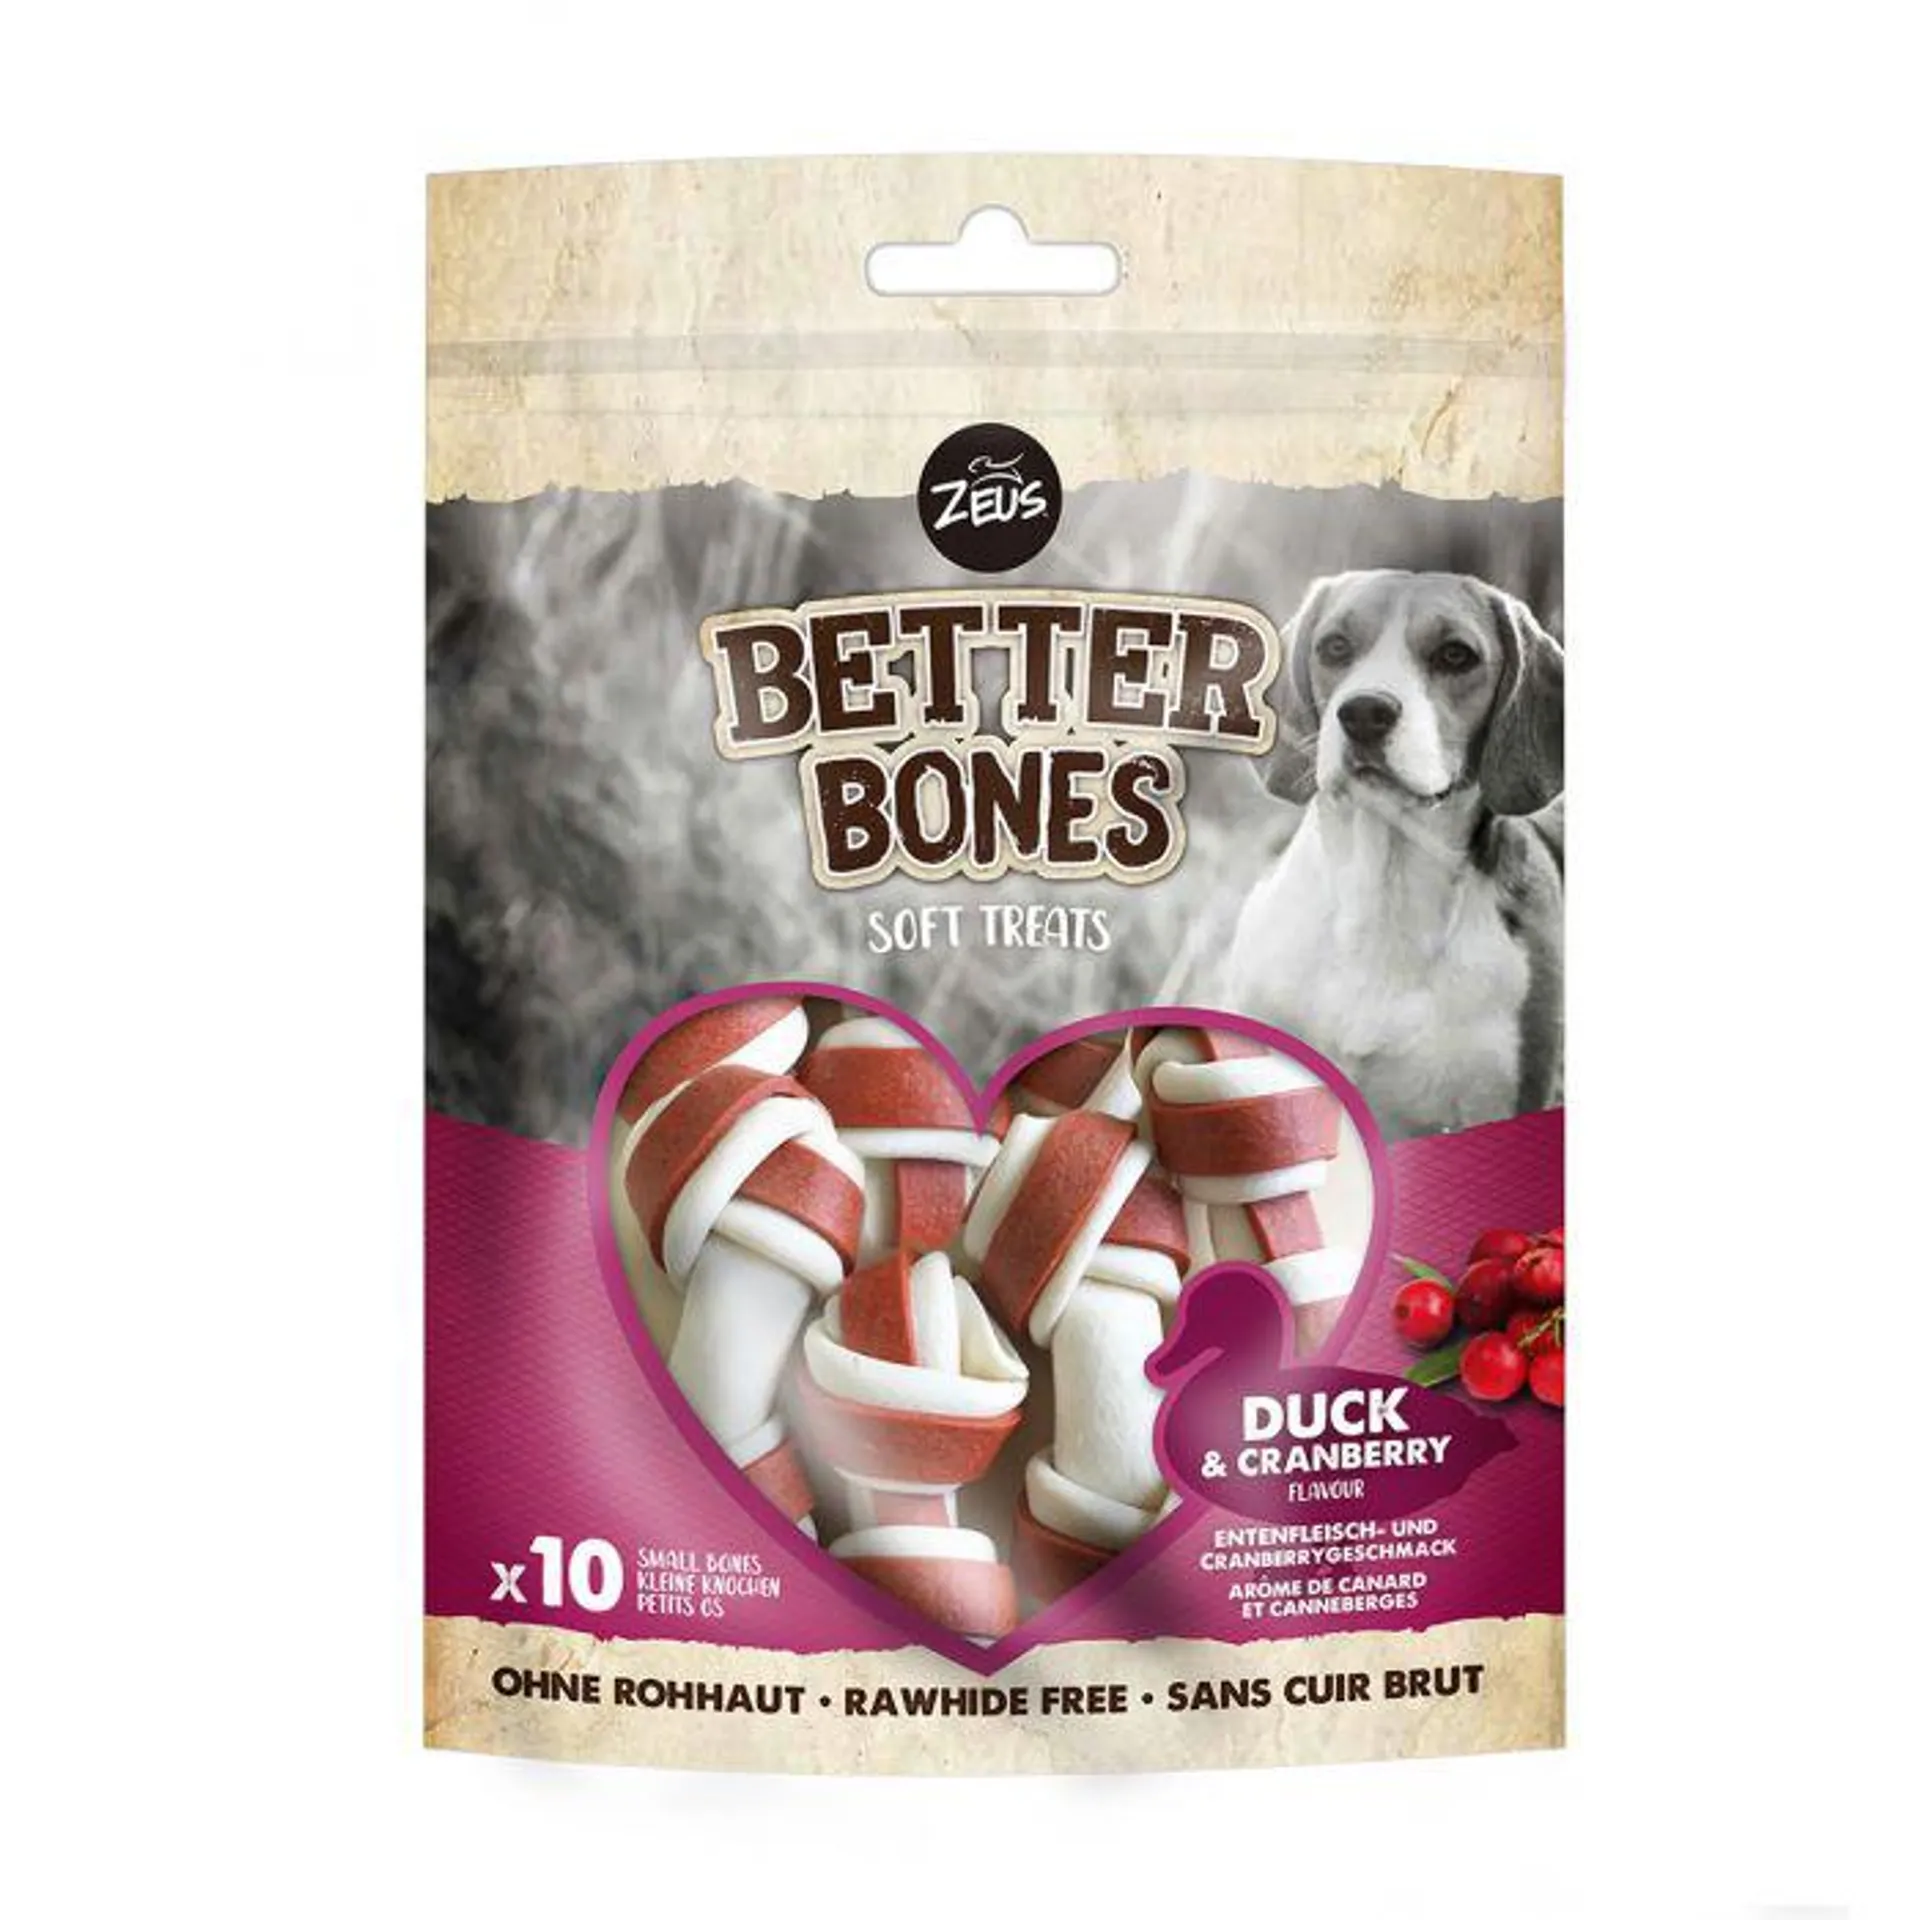 Zeus Better Bones Duck & Cranberry Bones